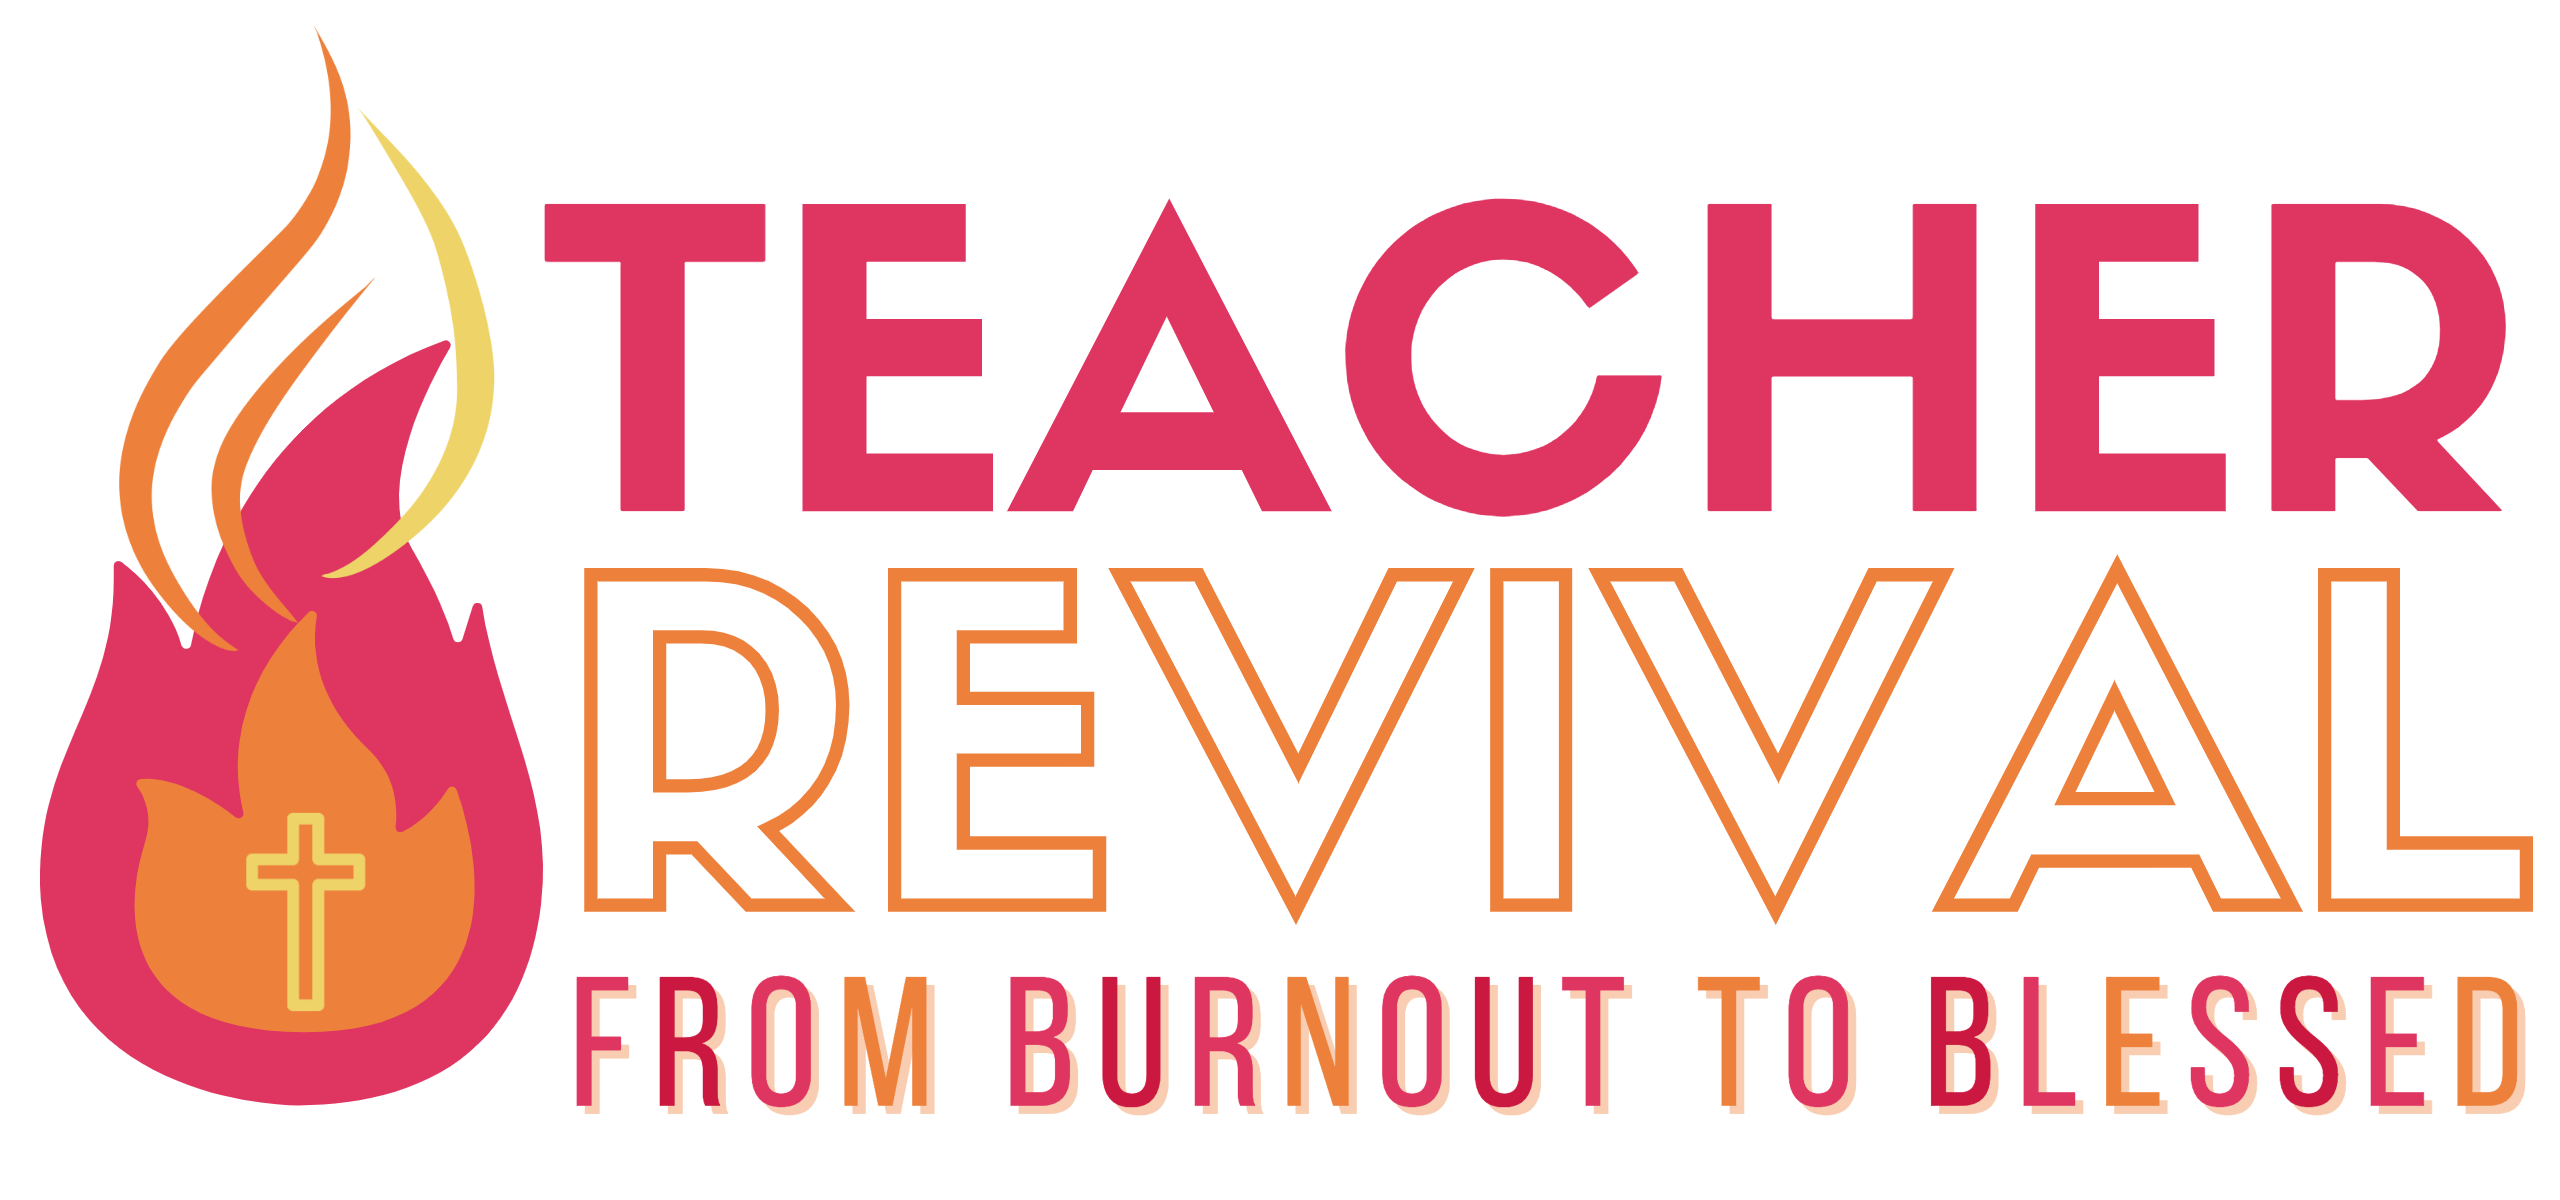 Teacher Revival